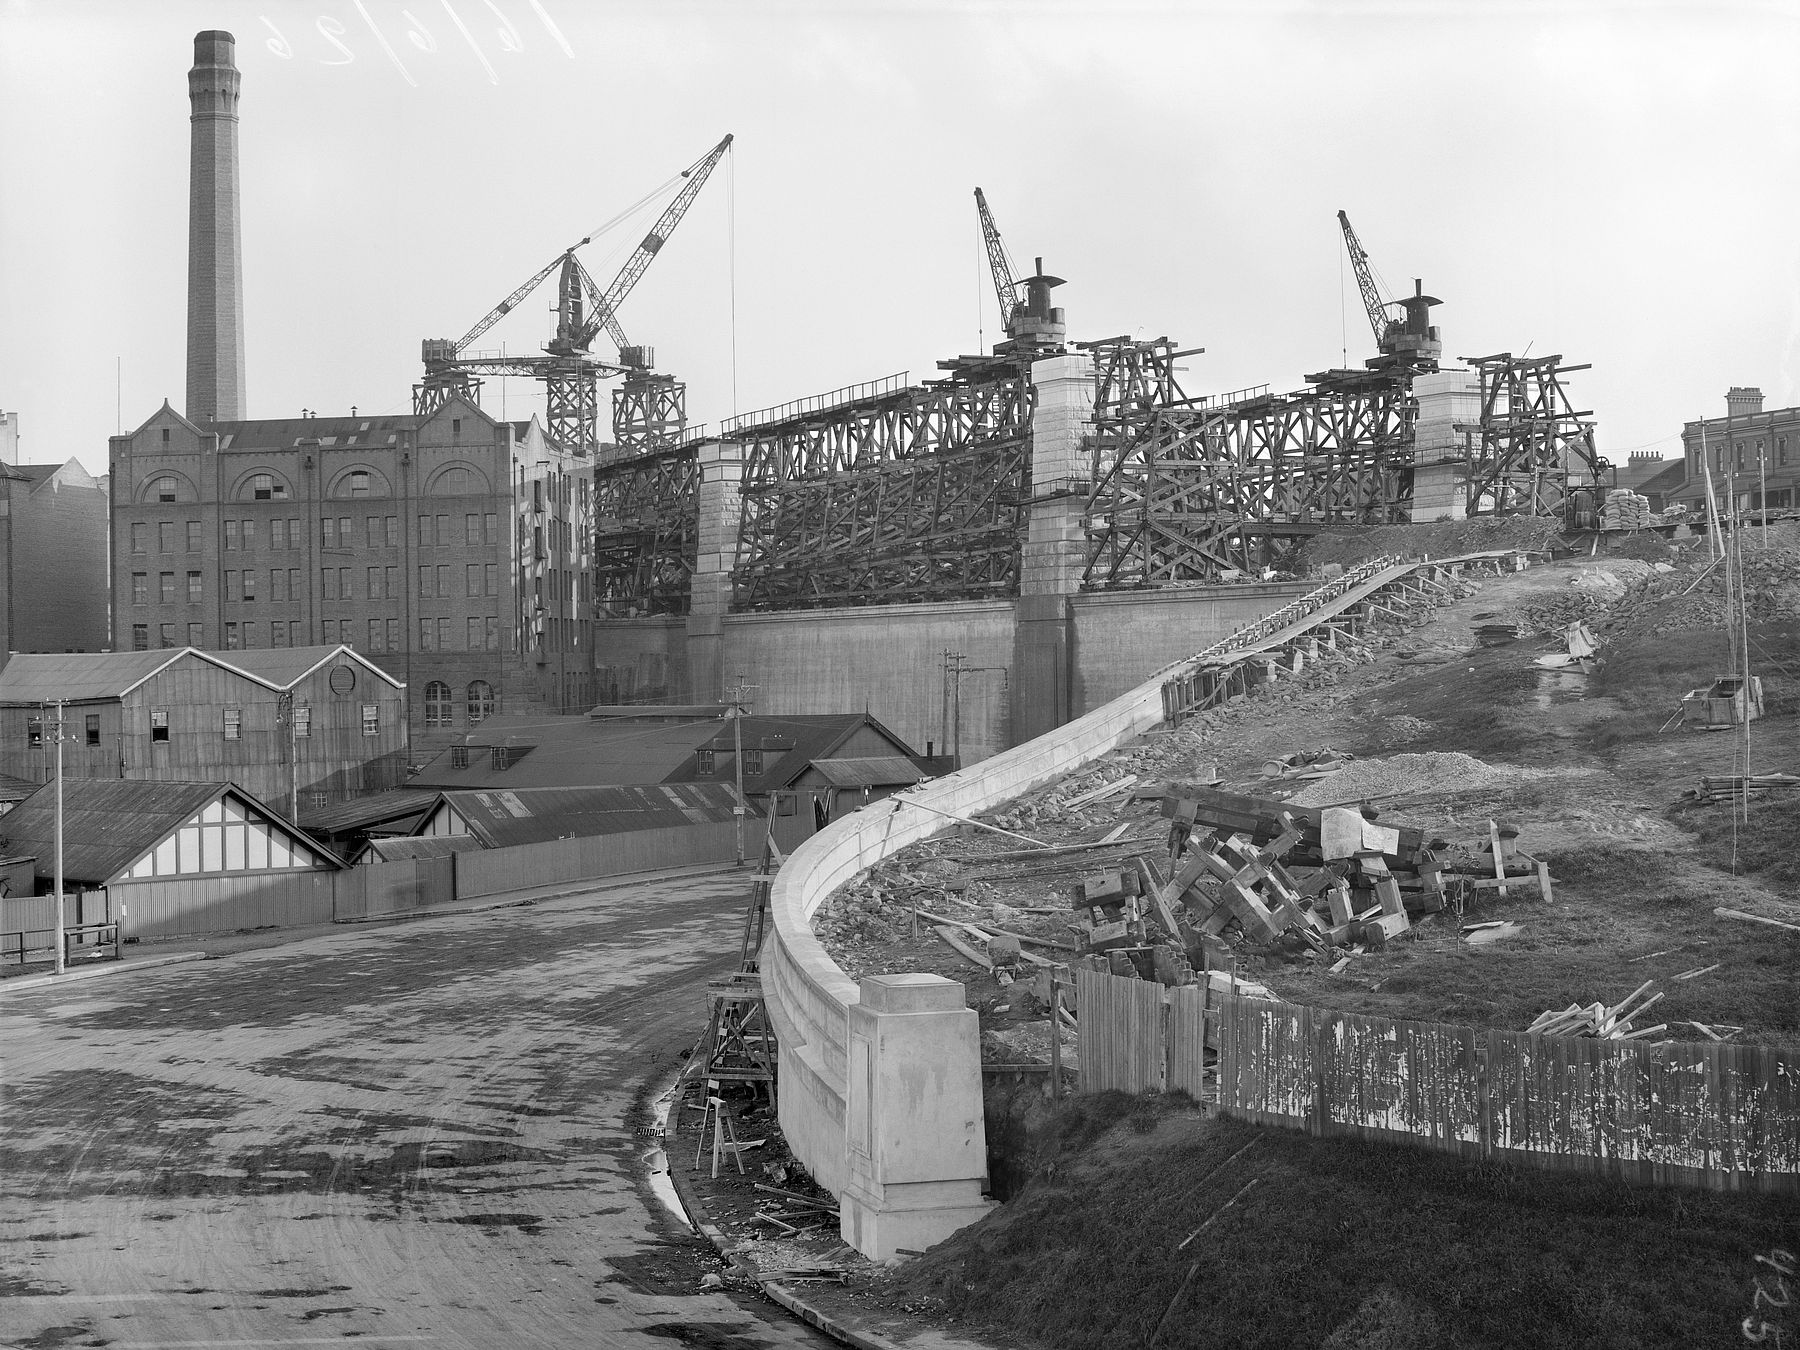 Sydney Harbour bridge, photograph by Arthur Ernest Foster, 1916-1947, ON 30 / Series 07: Box 37 No. 430.
